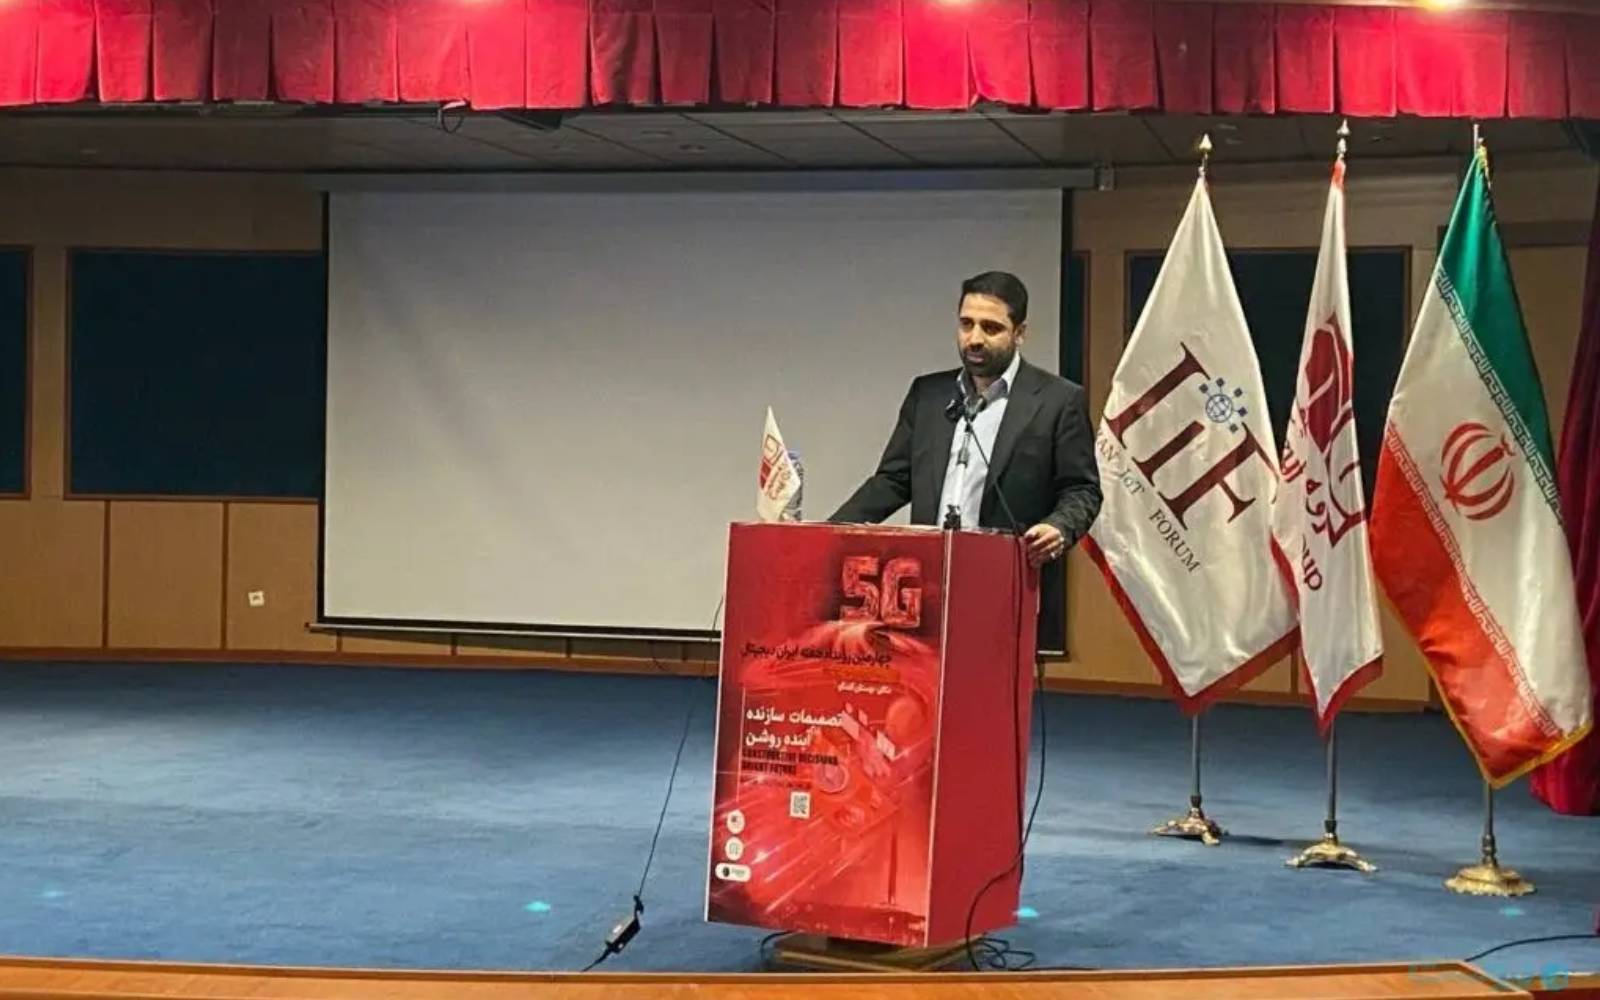 رئیس و دبیرشورای عالی فضای مجازی در رویداد ملی هفته ایران دیجیتال مطرح کرد / مشکلات متعدد حوزه فناوری اطلاعات و ارتباطات، نشان از ضعف این سیستم دارد